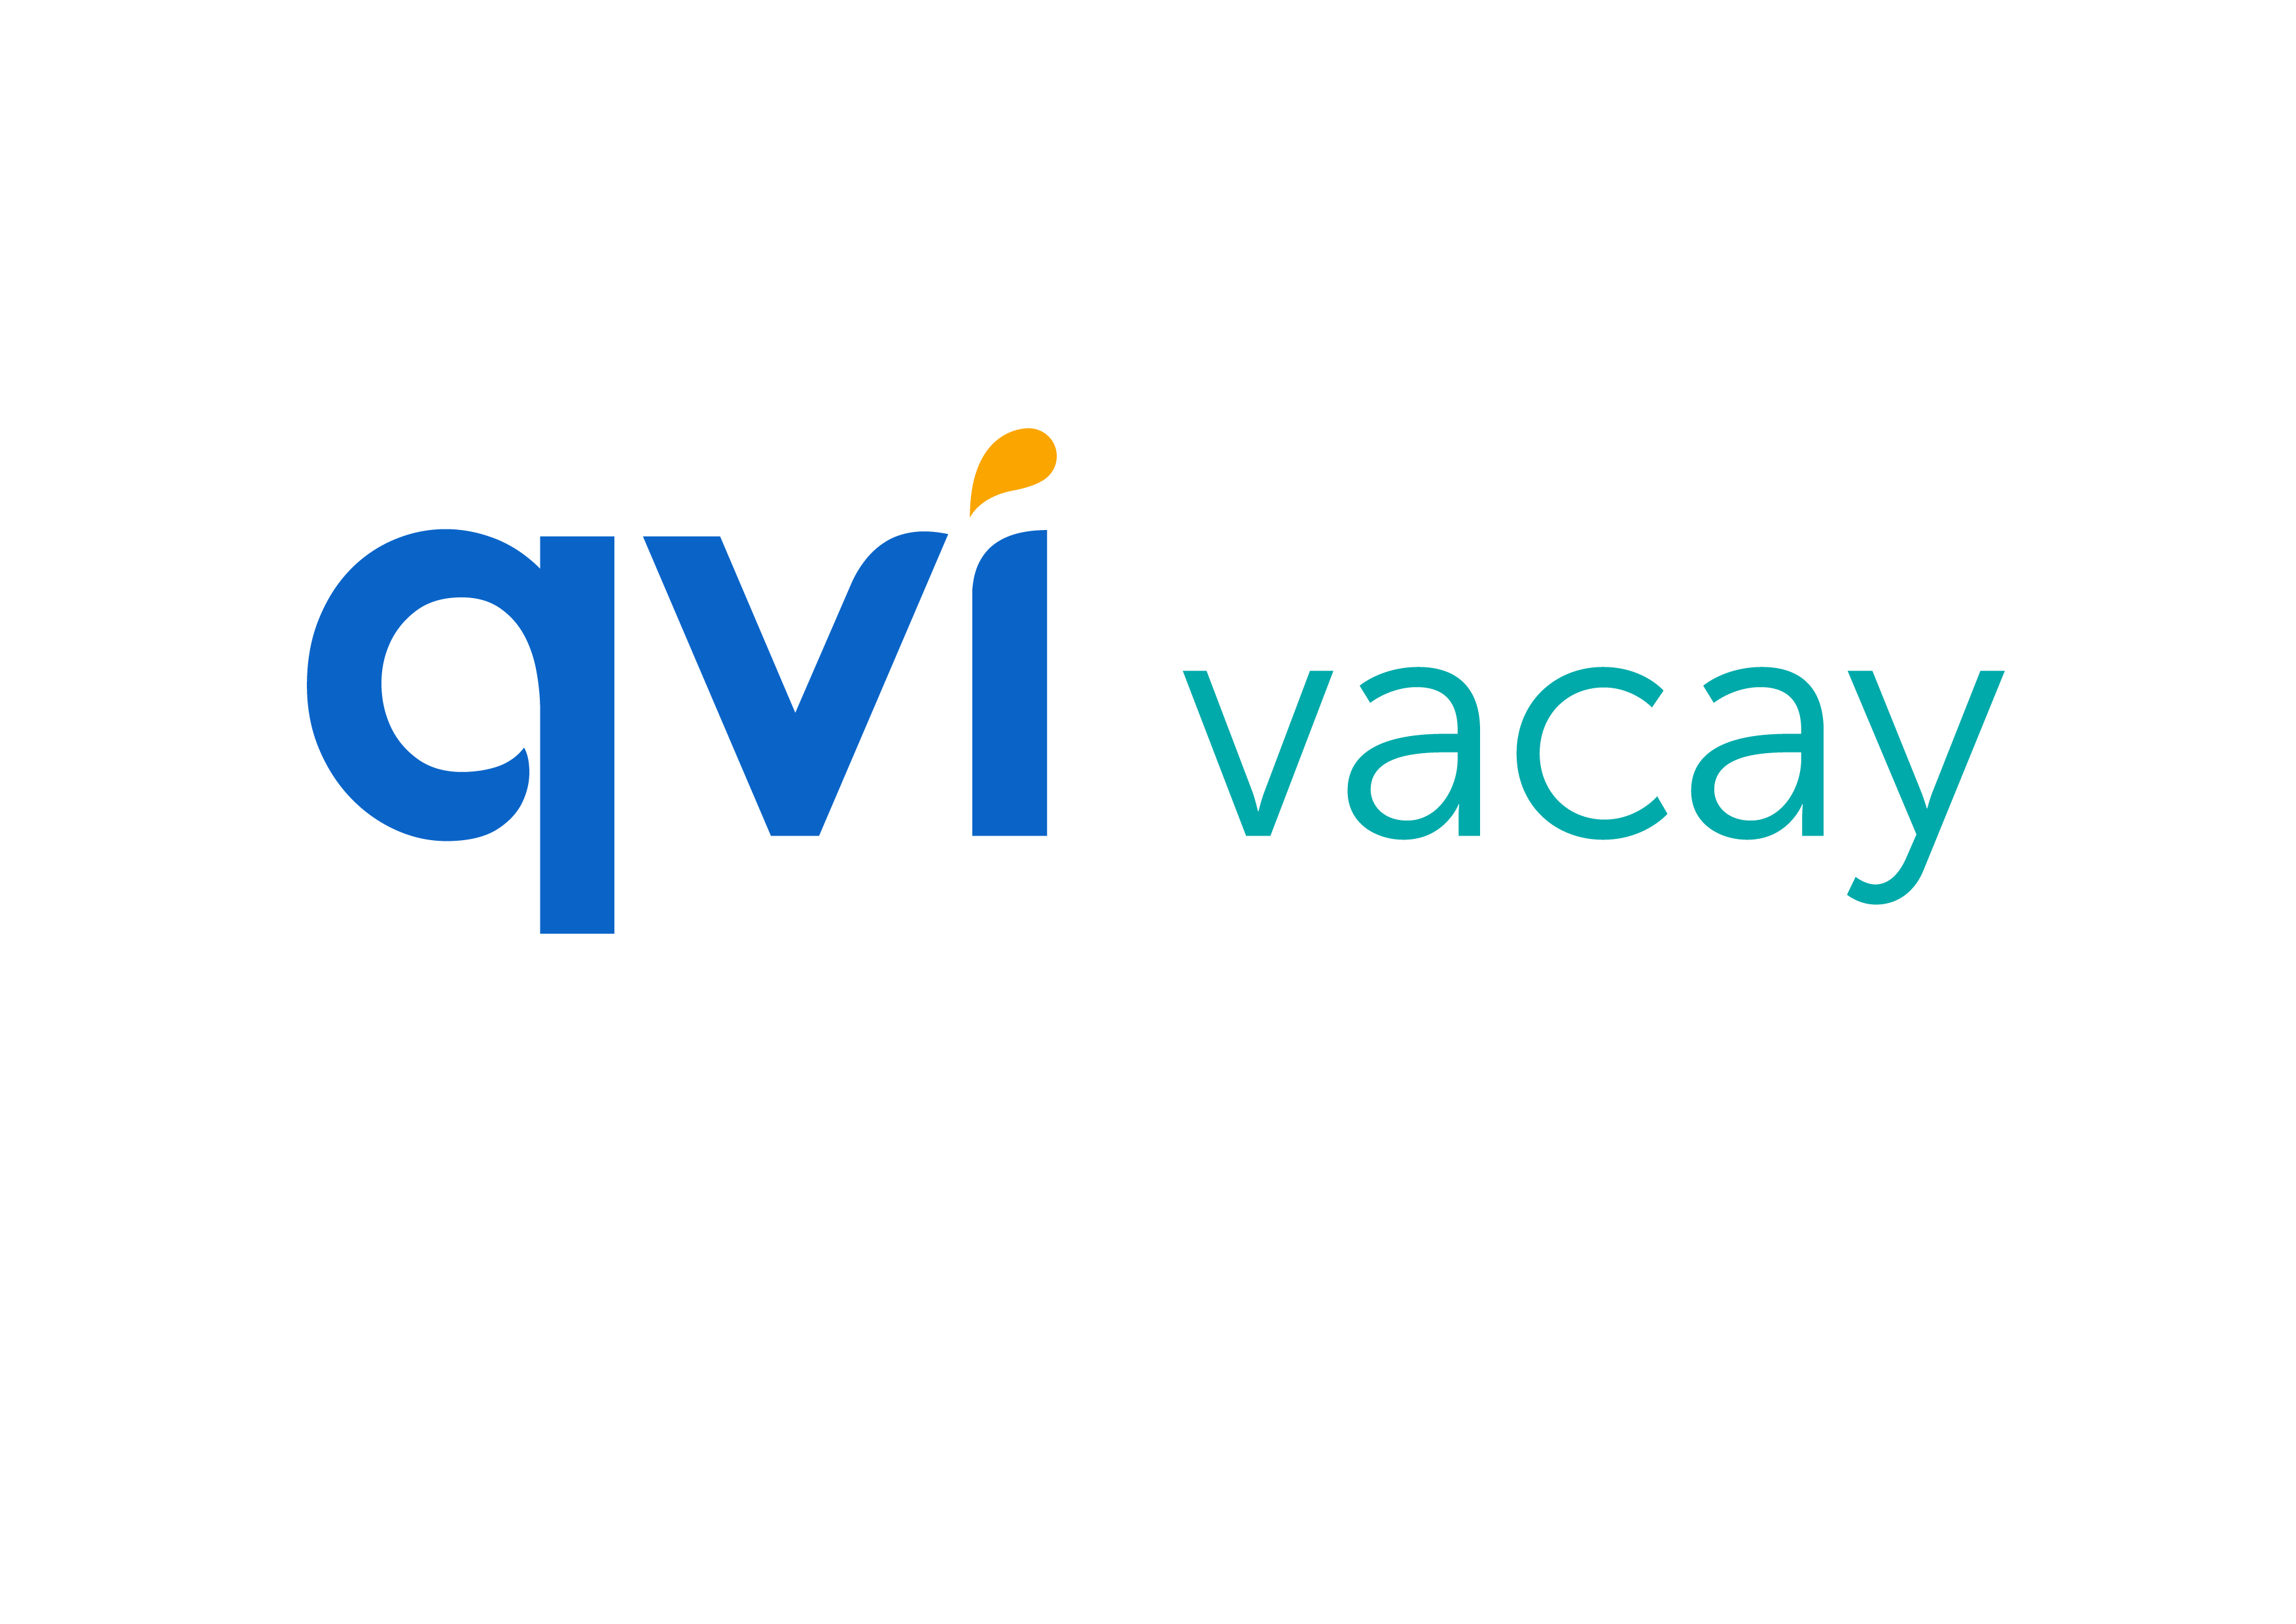 Qvi Vacay Logo